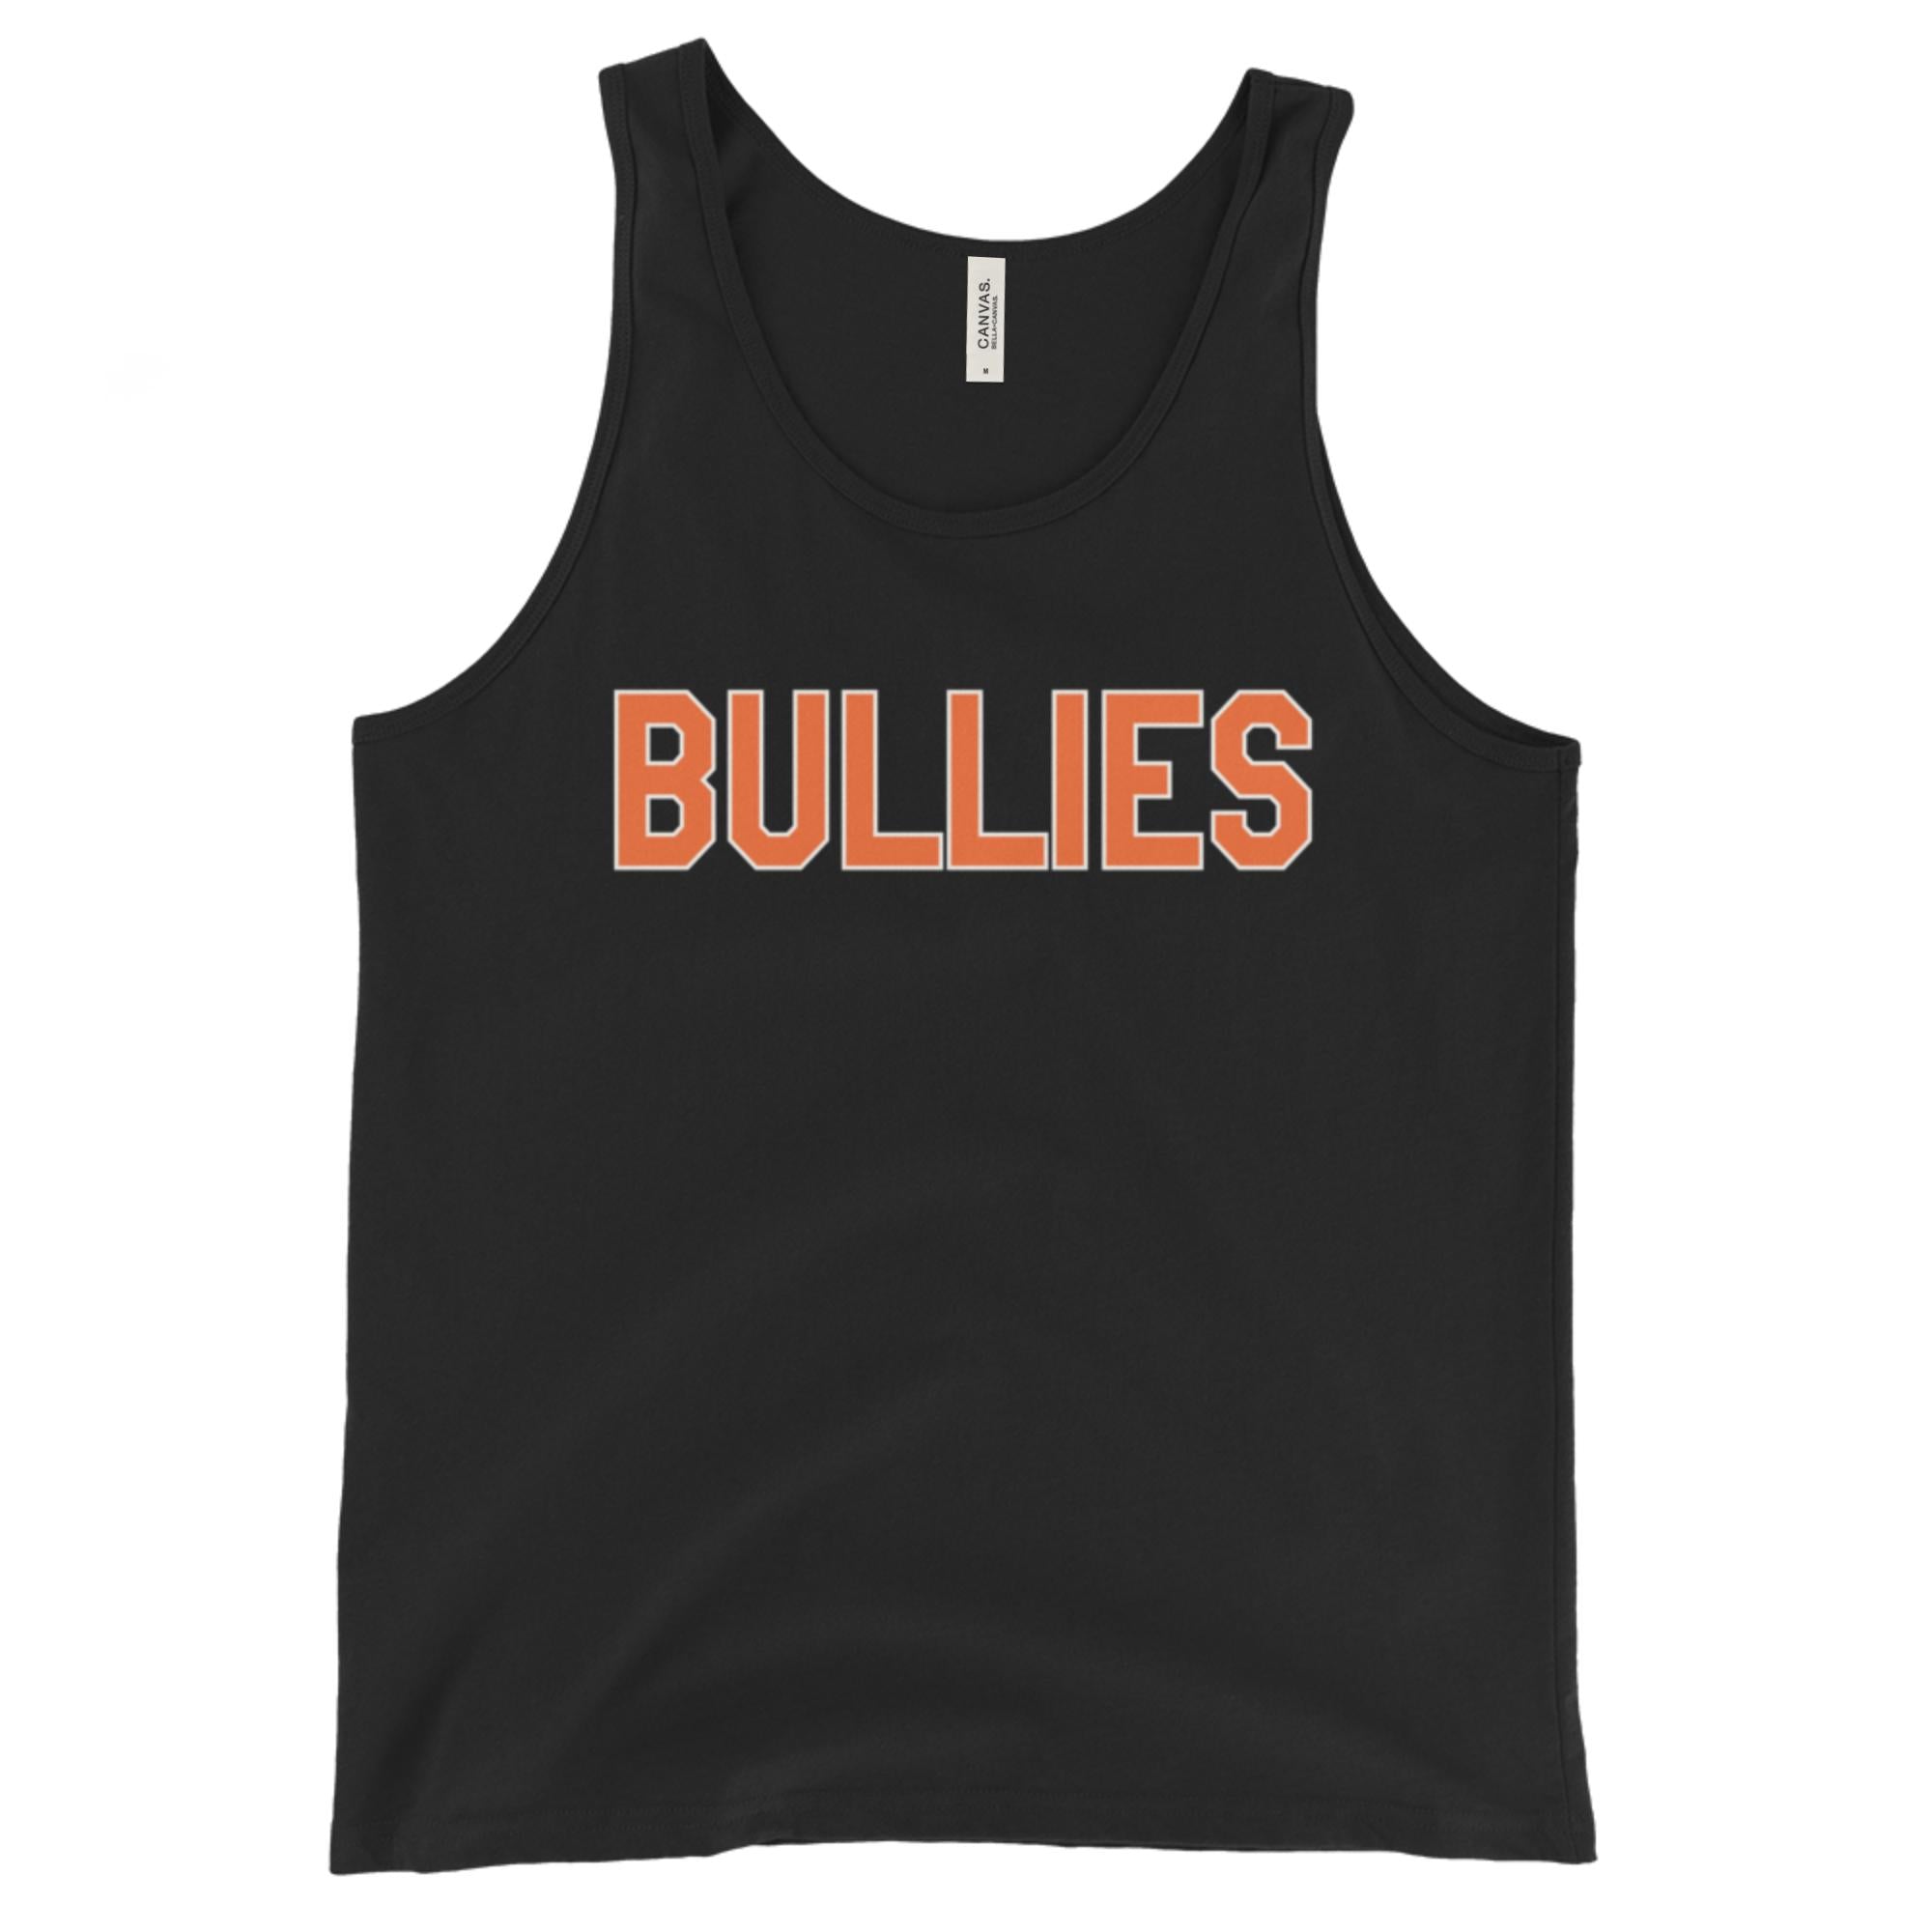 "Bullies" Tank Top